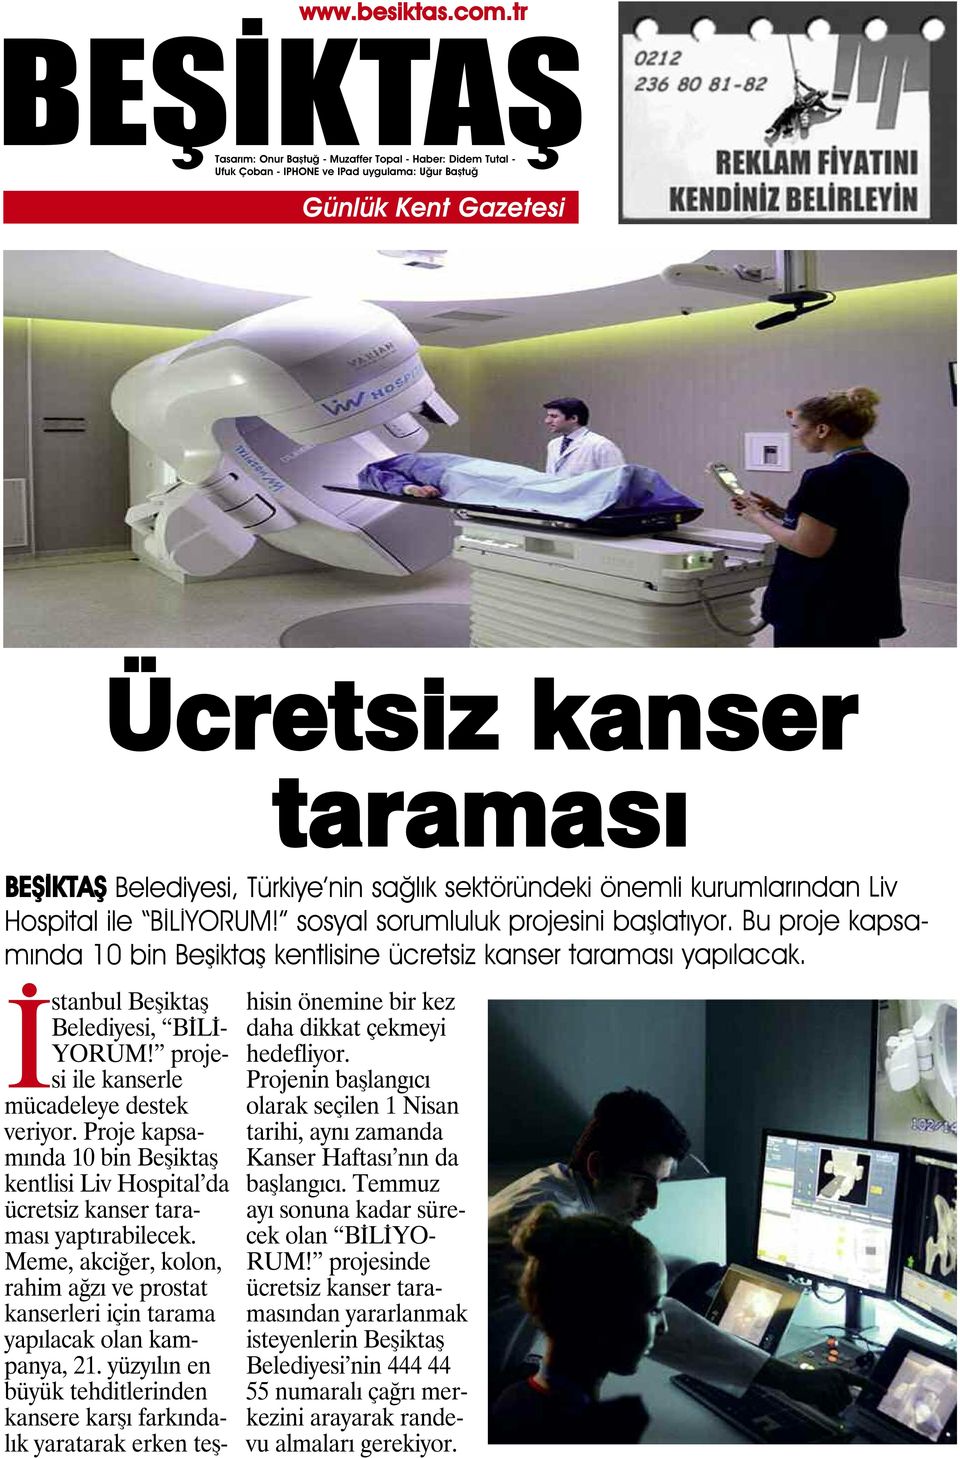 Proje kapsamında 10 bin Beşiktaş kentlisi Liv Hospital da ücretsiz kanser taraması yaptırabilecek. Meme, akciğer, kolon, rahim ağzı ve prostat kanserleri için tarama yapılacak olan kampanya, 21.